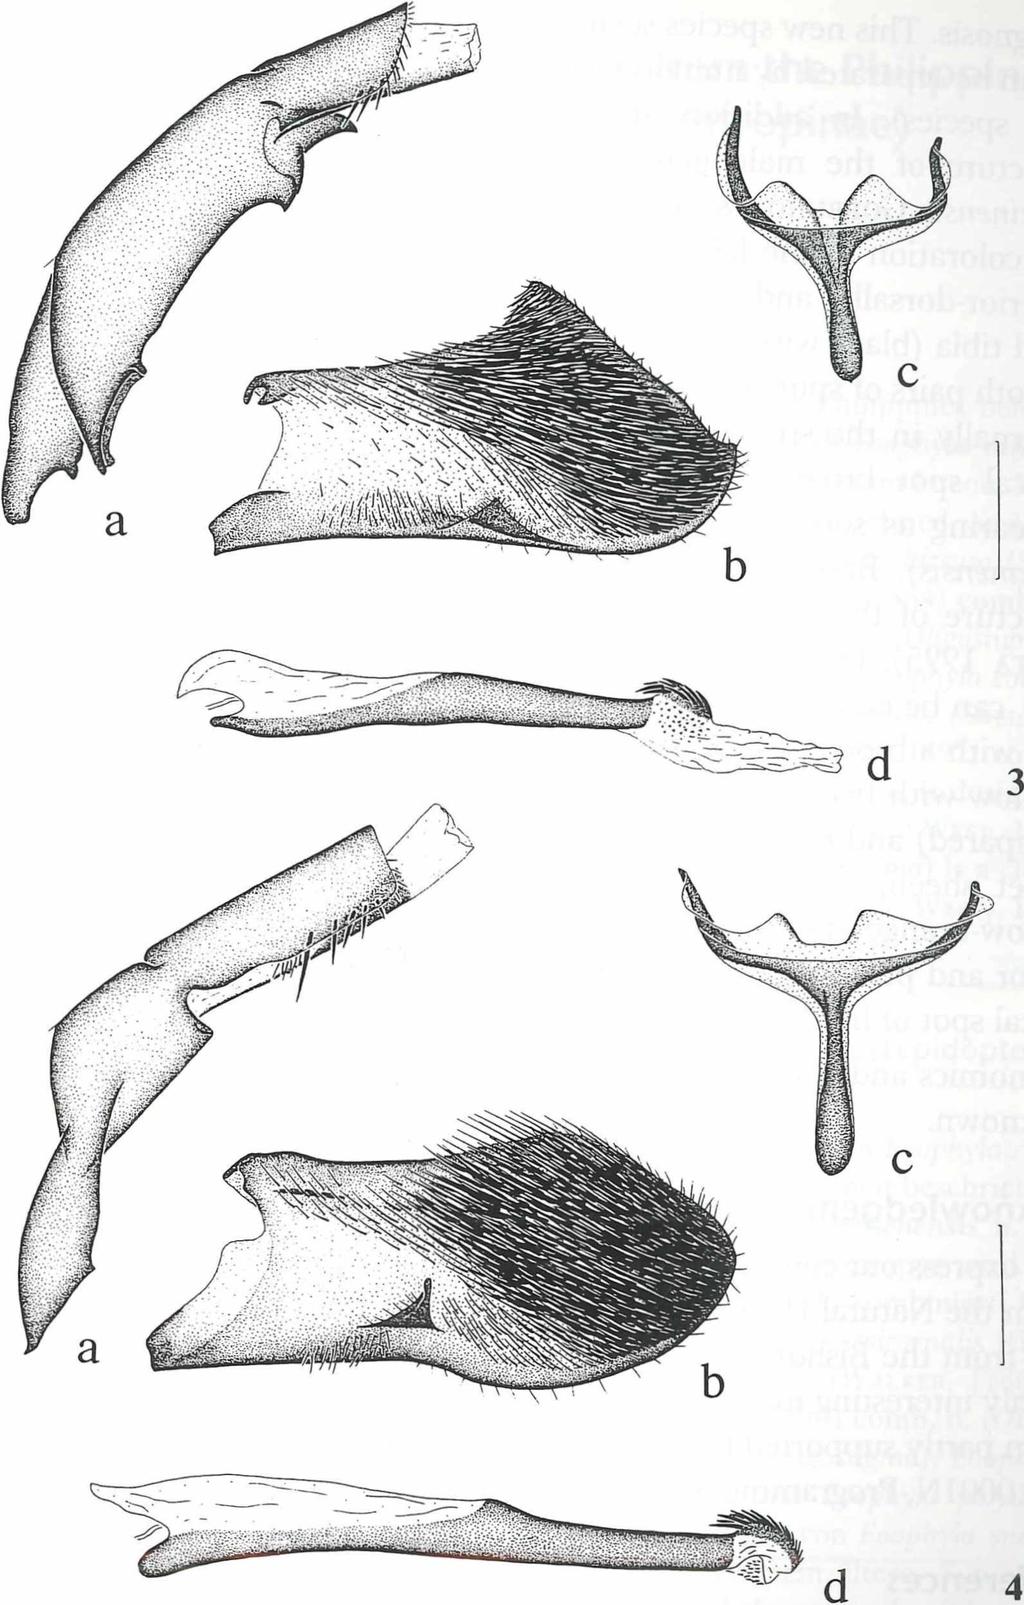 4 6 3 Fig. 3 : Male genitalia of C yan o sesia ja v a n a sp. nov., holotype (genital preparation No. OG-97-20) (BMNH). Fig. 4: Male genitalia of C y an o se sia p h ilip p in a sp.